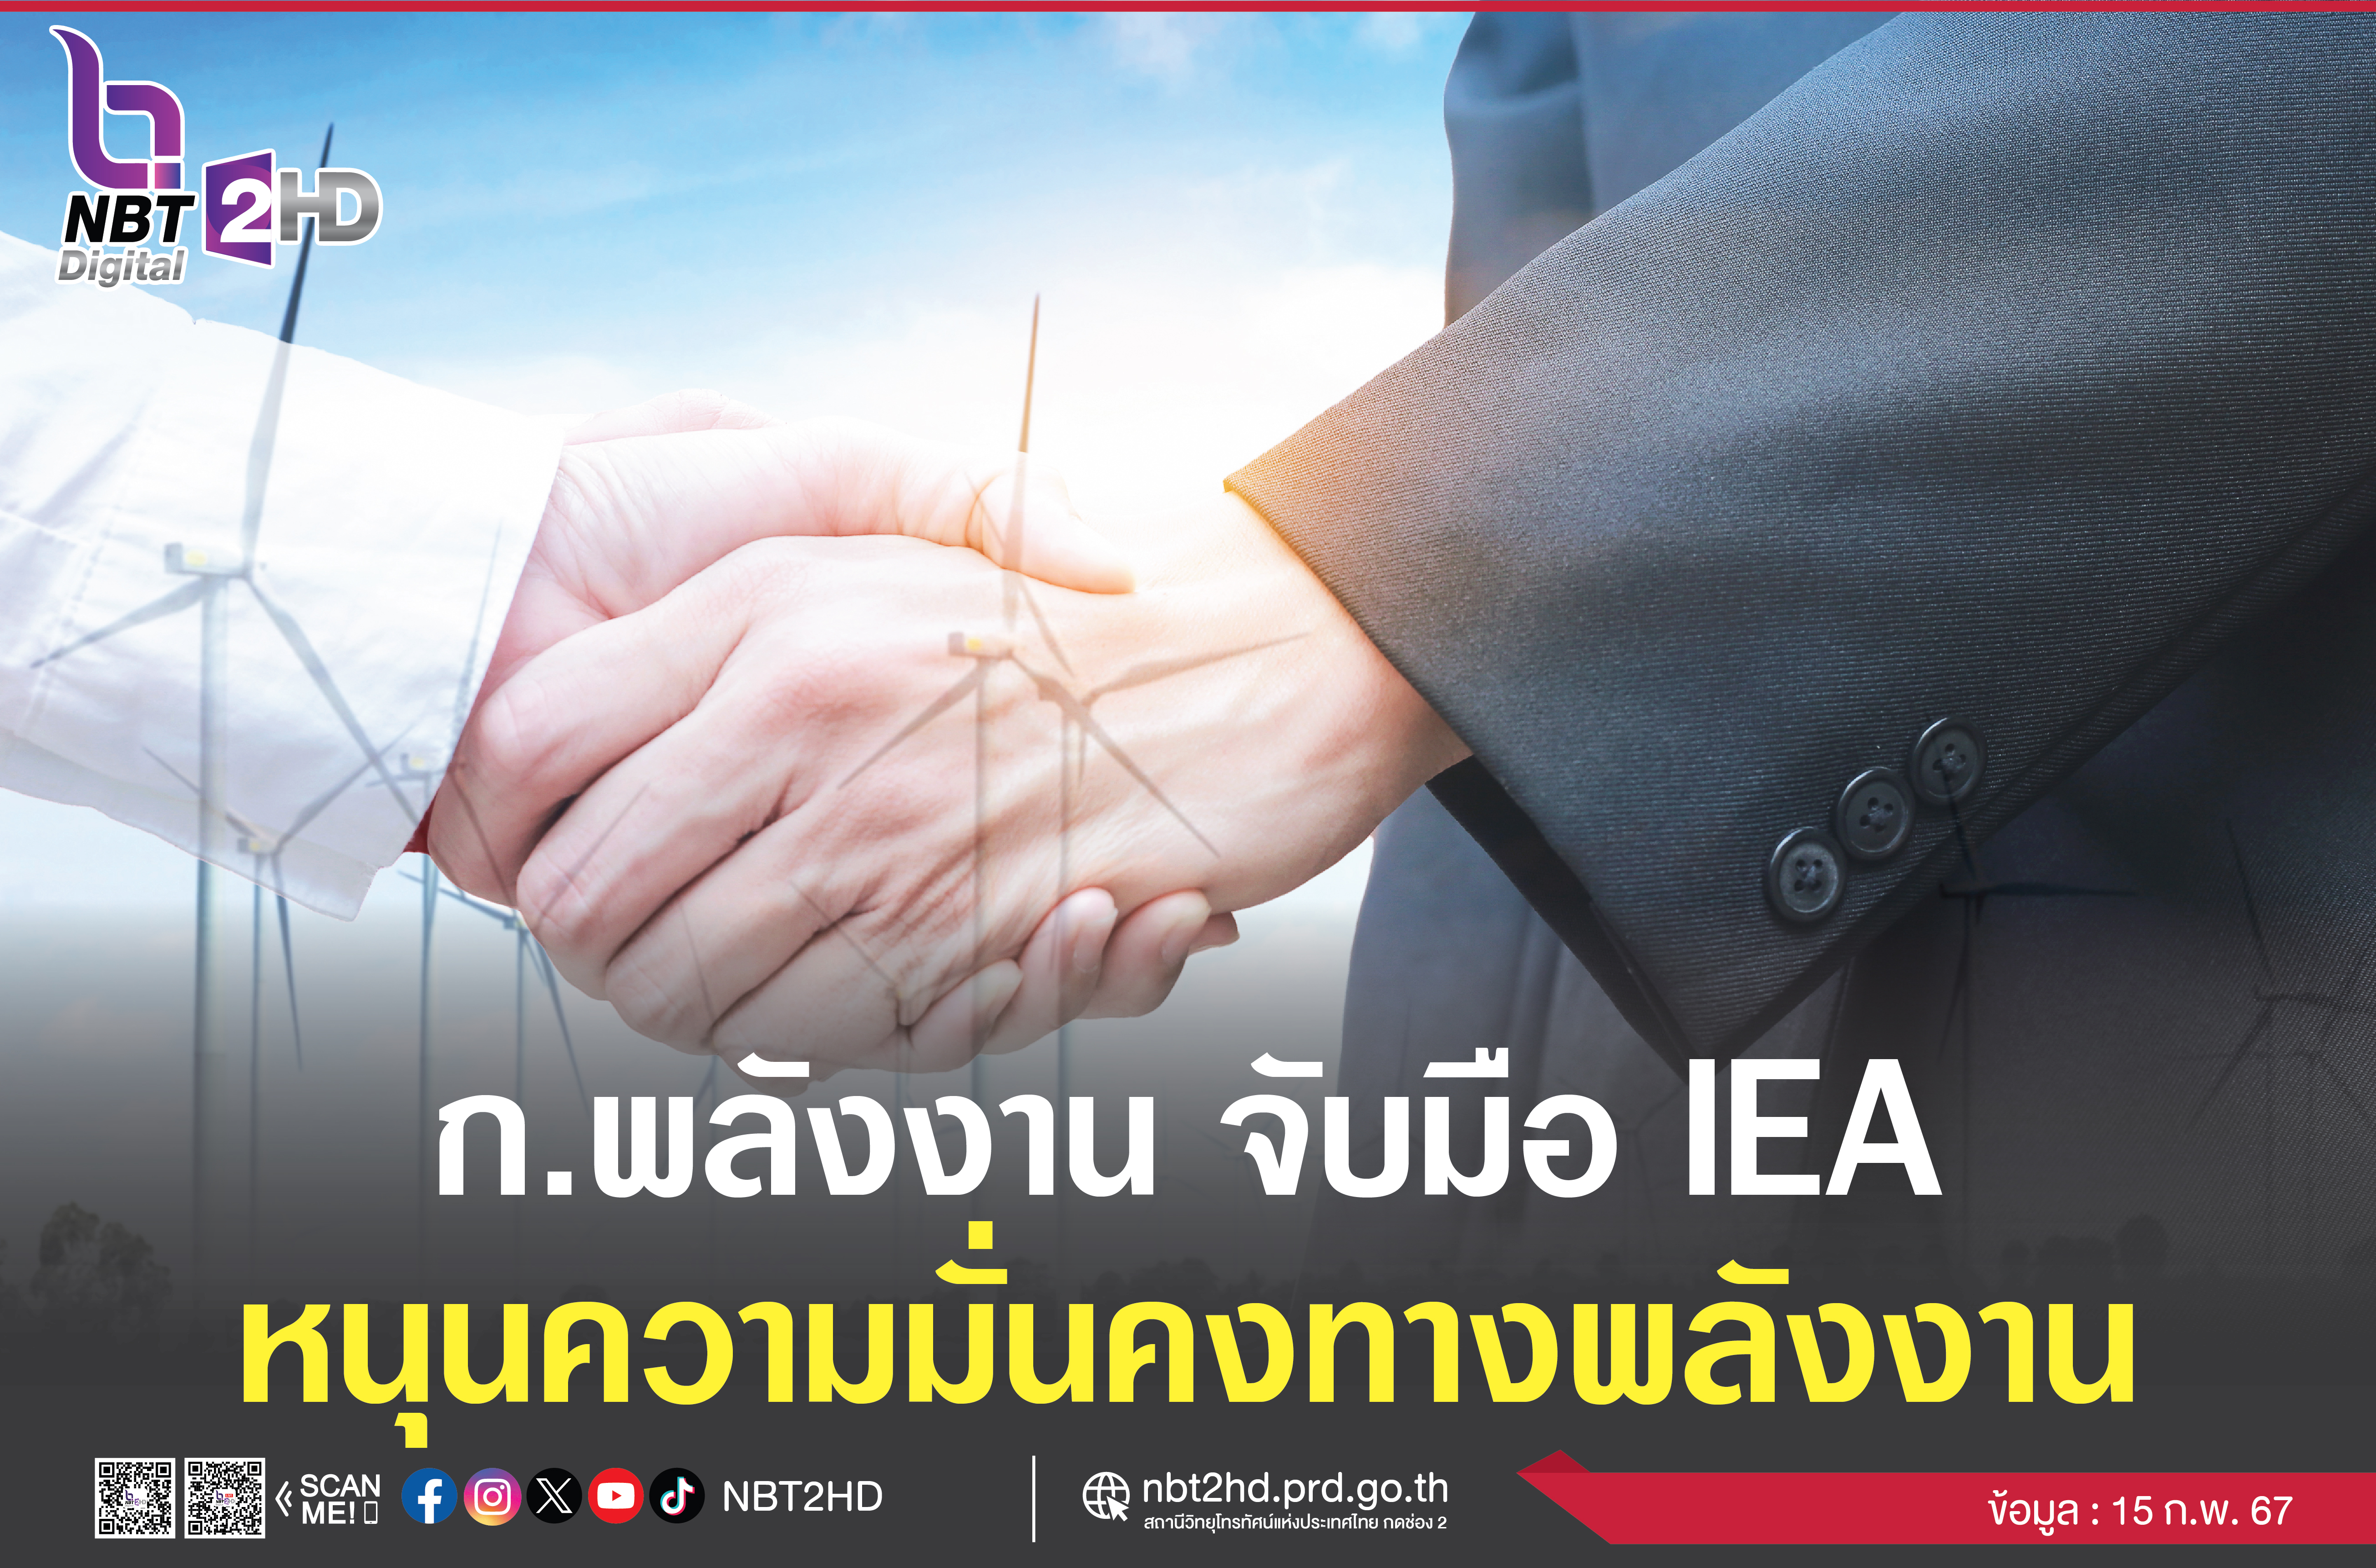 ก.พลังงาน จับมือ IEA  พัฒนาภาคพลังงานไทย ส่งเสริมความมั่นคงทางพลังงาน เปลี่ยนผ่านสู่พลังงานสะอาดที่เป็นมิตรกับสิ่งแวดล้อม